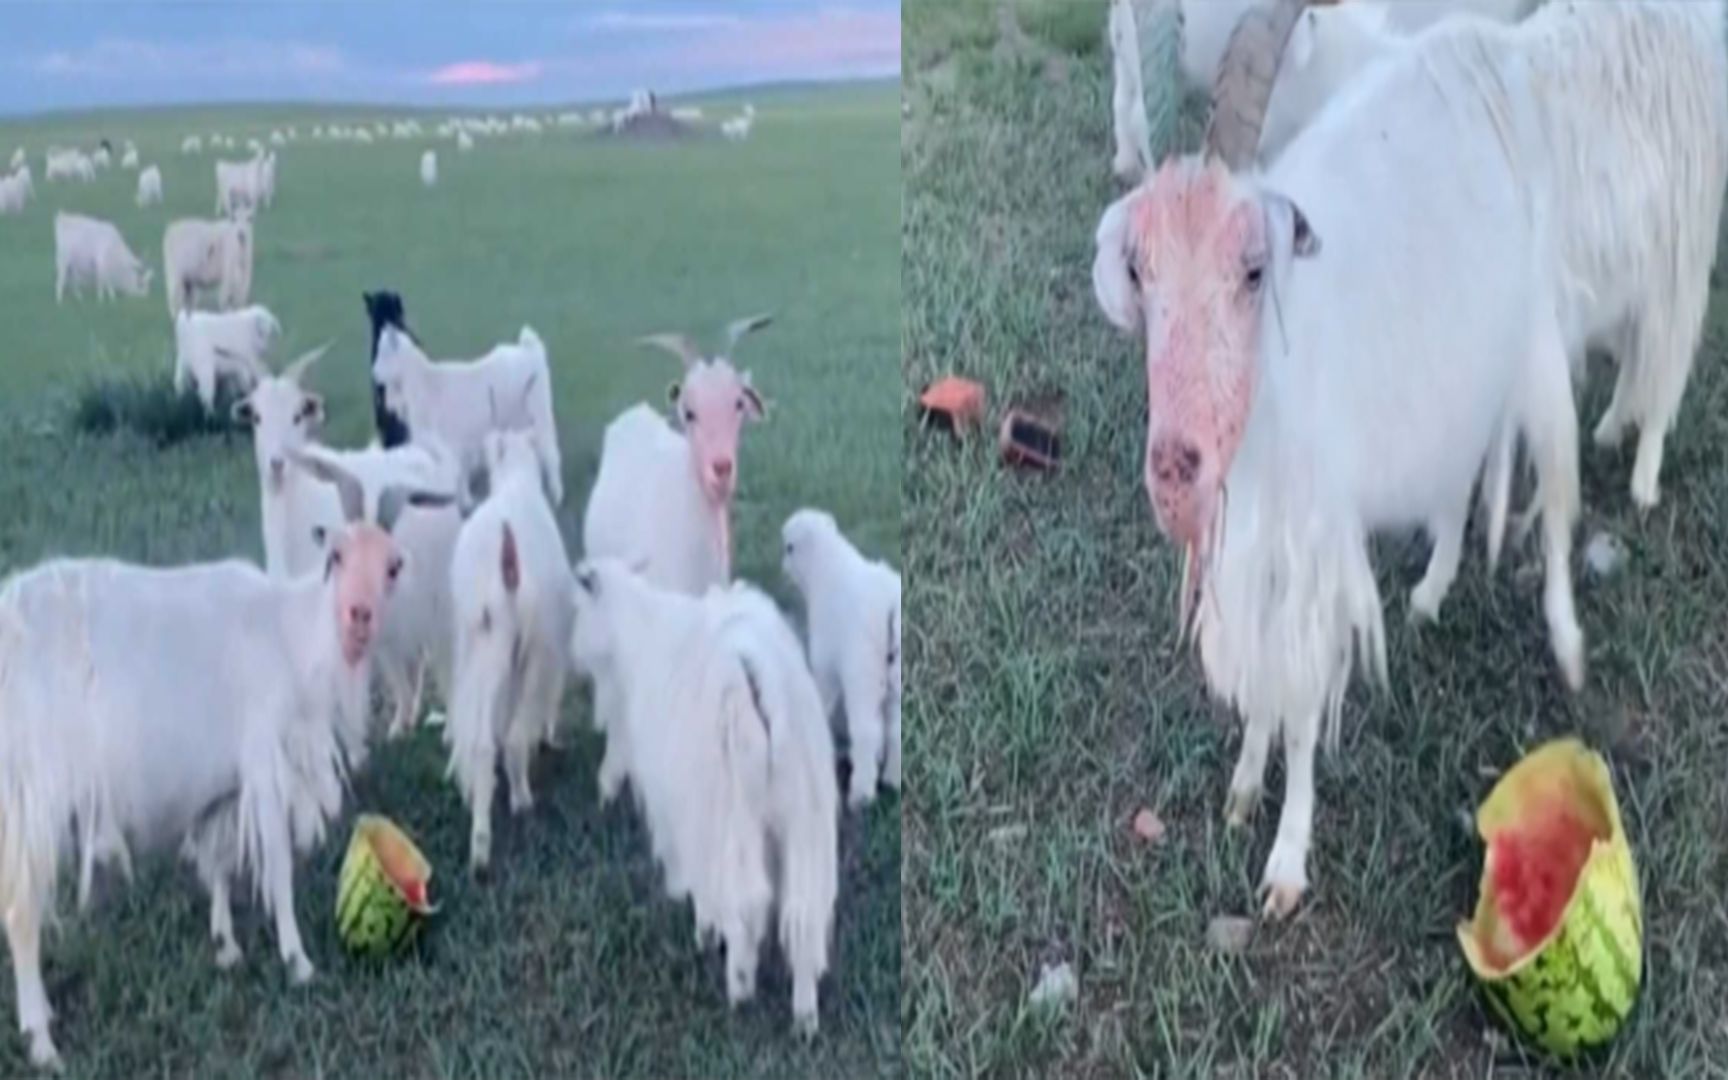 群羊 羊 动物 农村 羊场 牲畜图片免费下载 - 觅知网